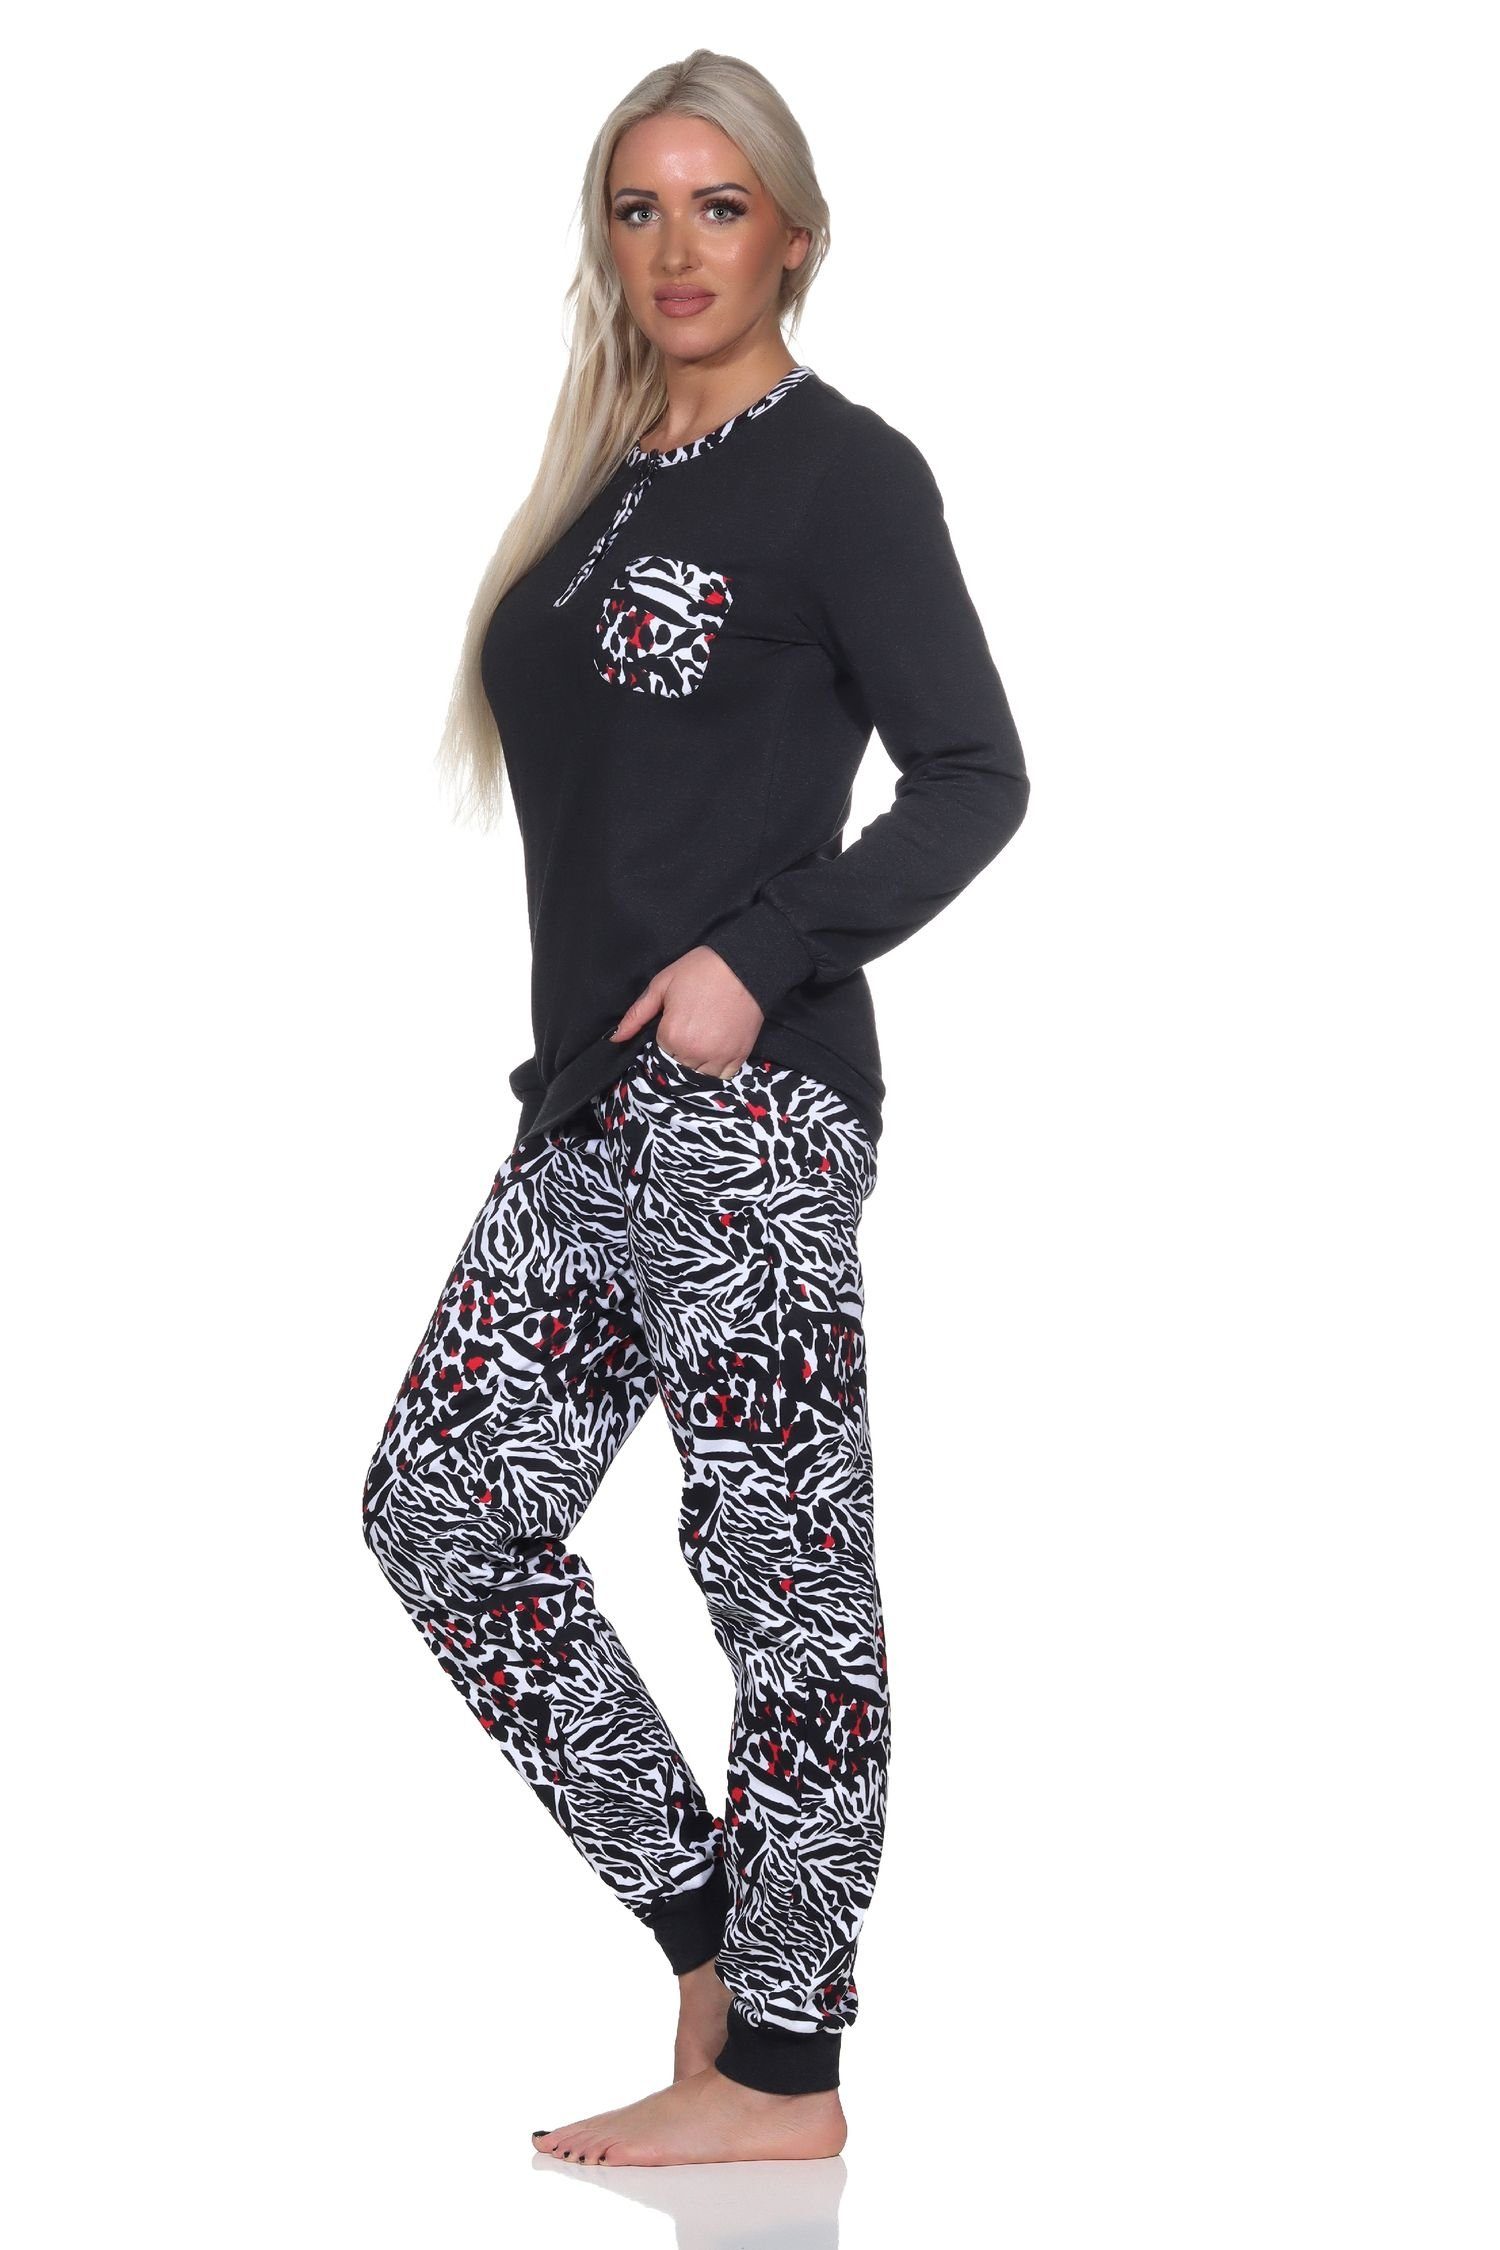 Damen in Pyjama Animal-Print-Optik Kuschel Schlafanzug schwarz Normann Interlock Normann